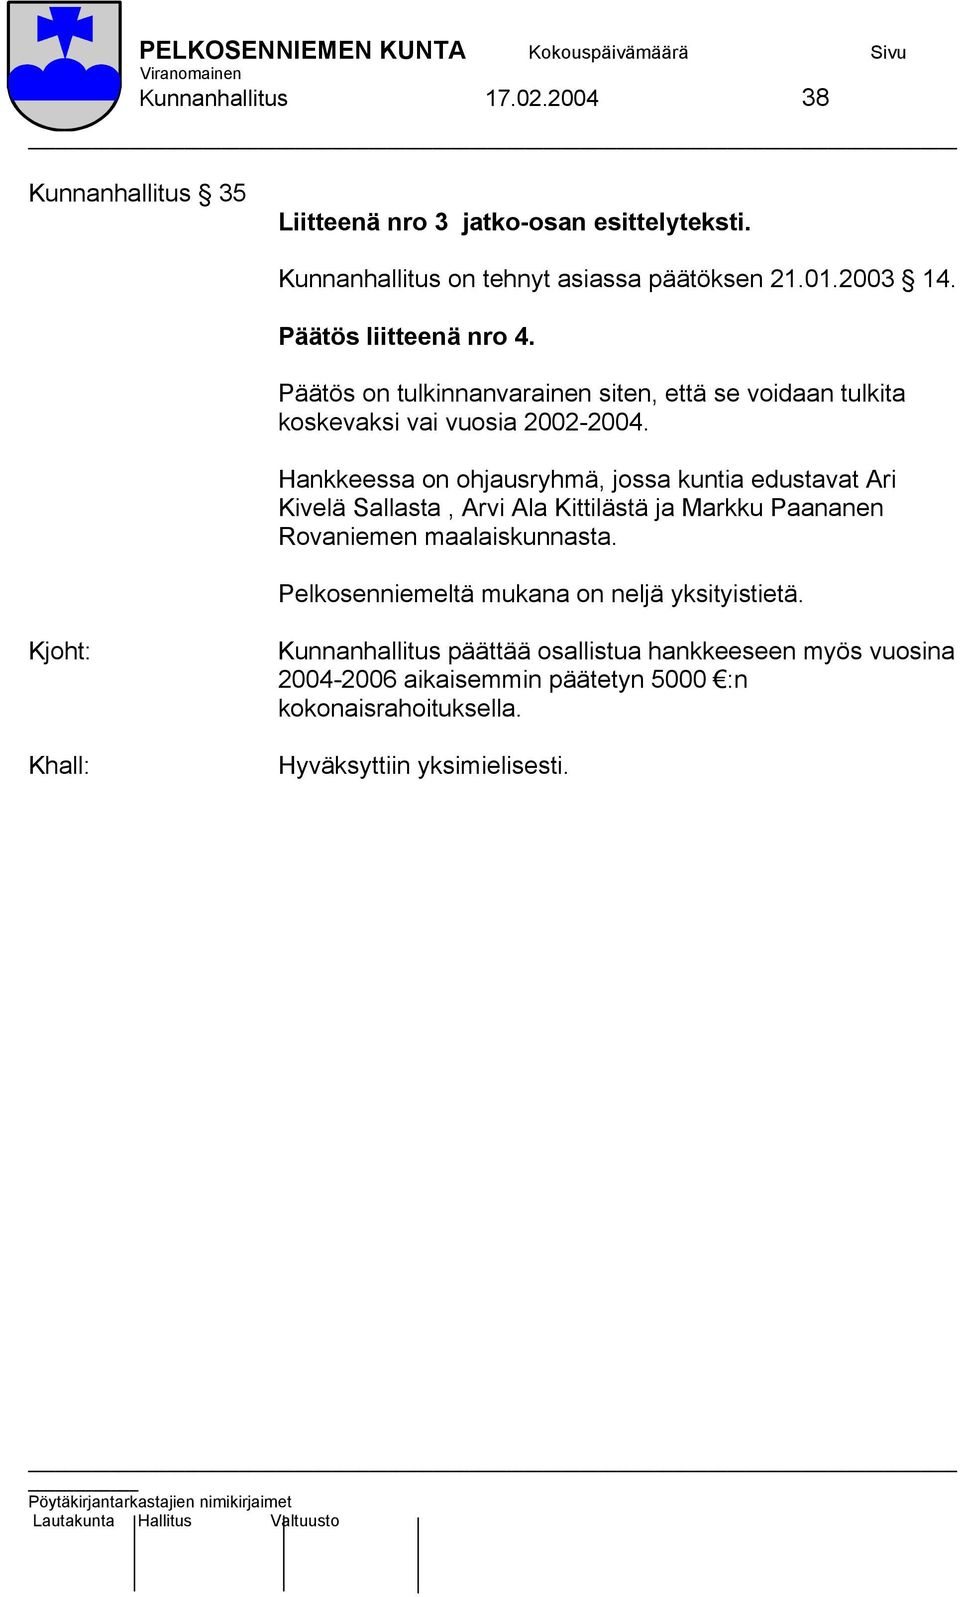 Hankkeessa on ohjausryhmä, jossa kuntia edustavat Ari Kivelä Sallasta, Arvi Ala Kittilästä ja Markku Paananen Rovaniemen maalaiskunnasta.